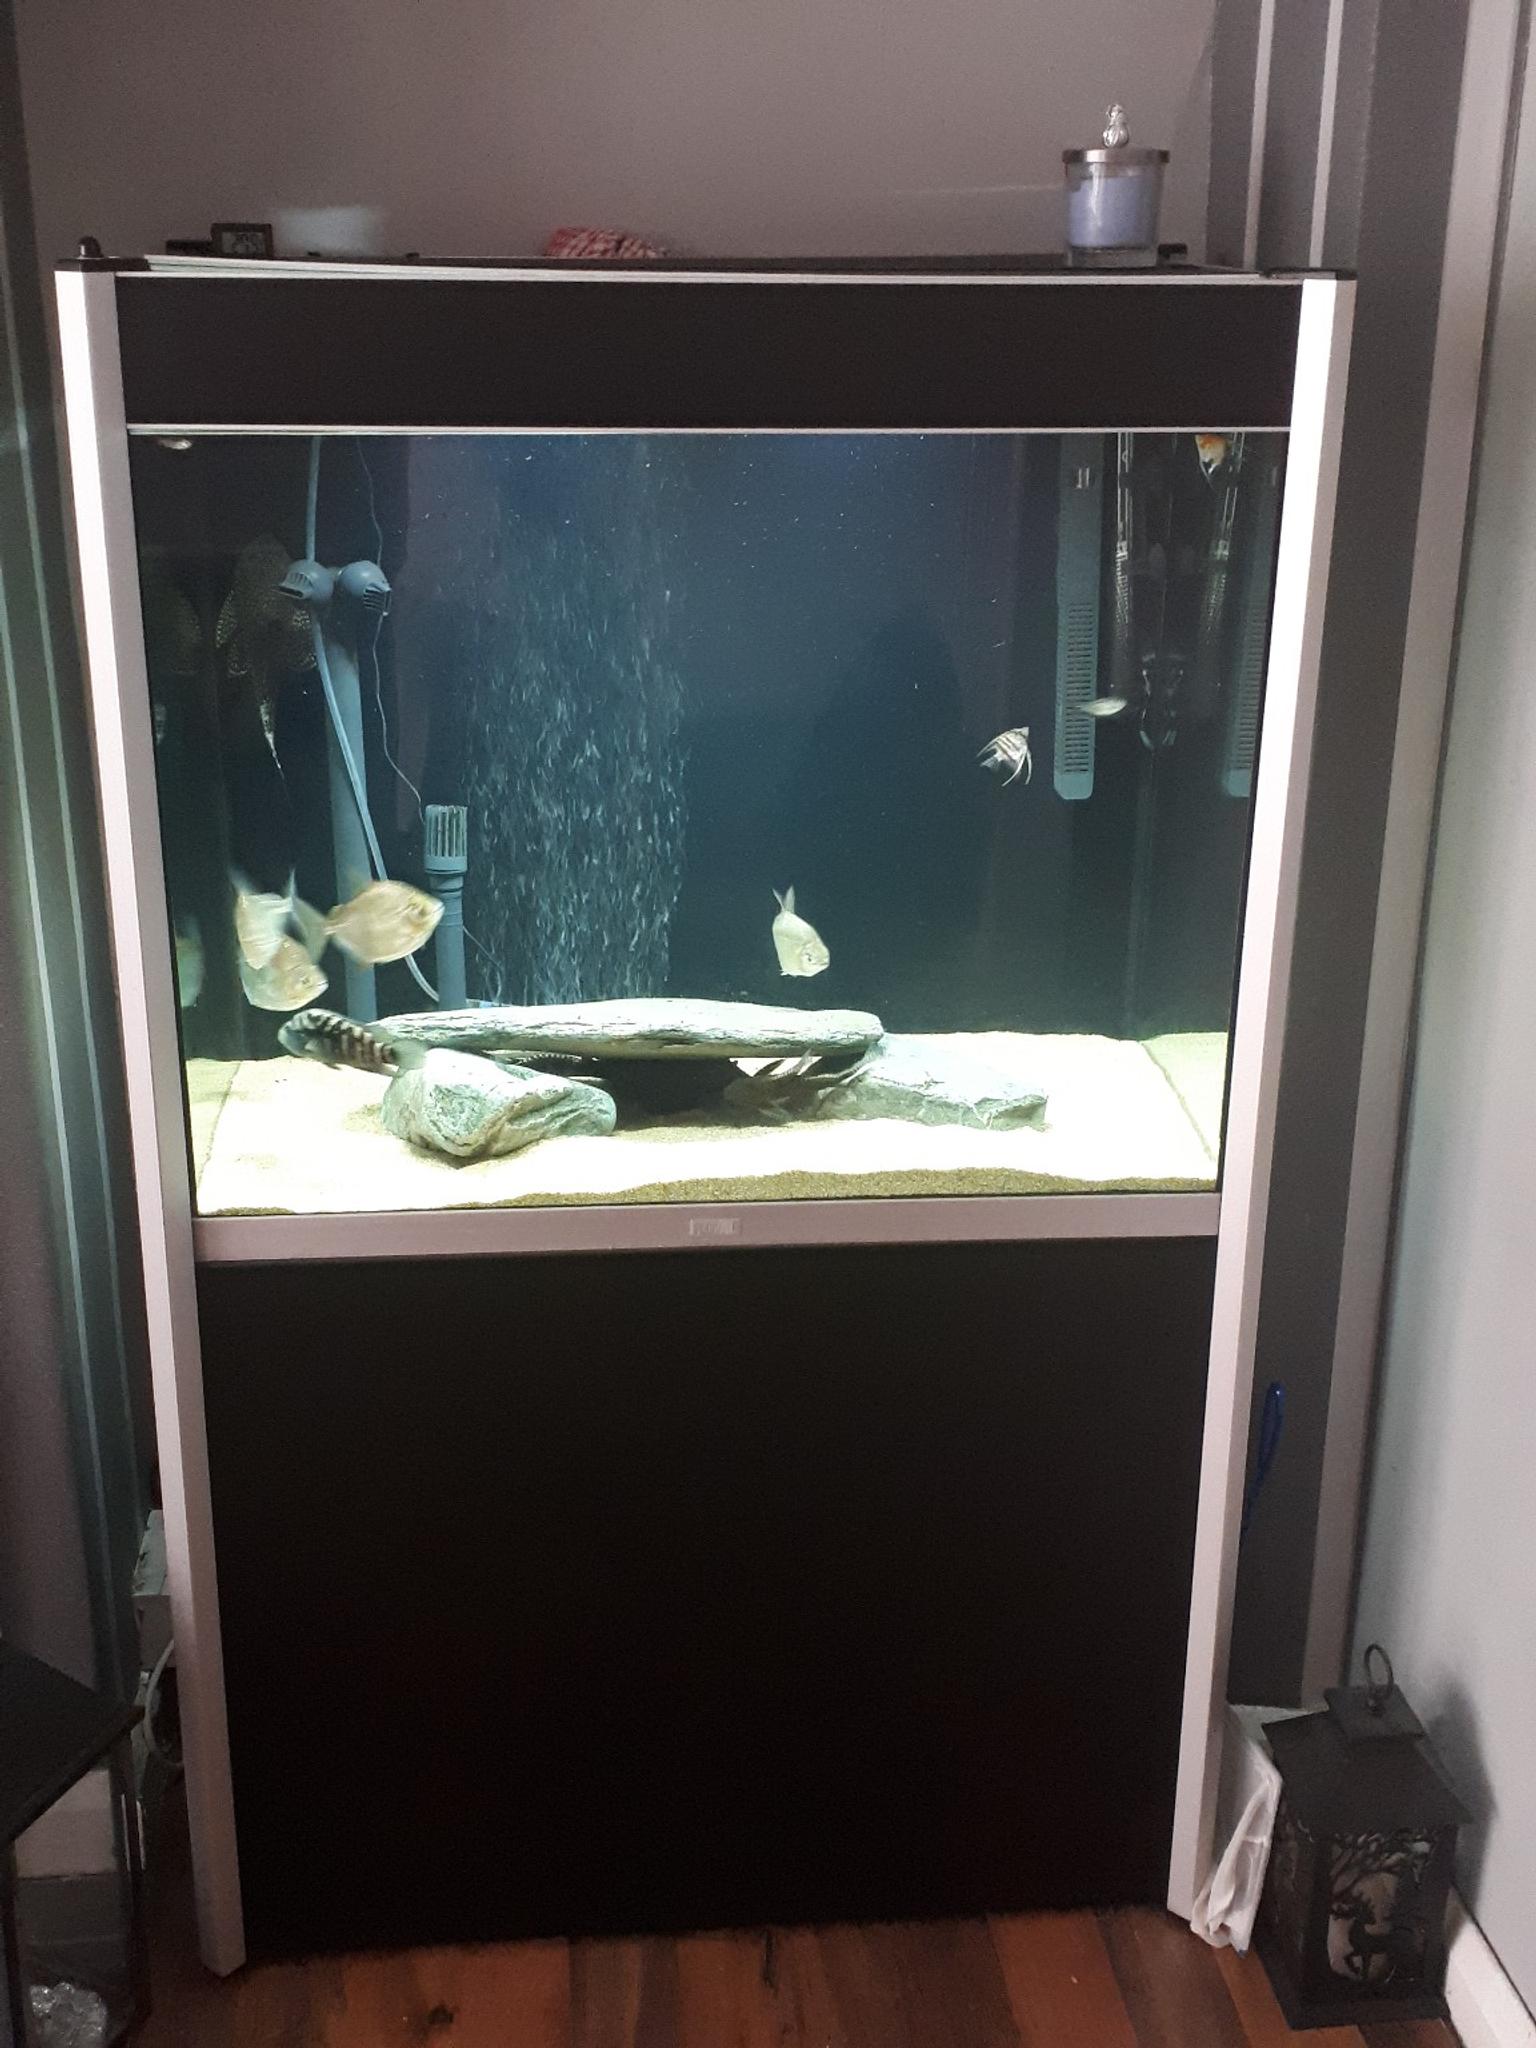 Fluval Profile 850 Aquarium Includes Fish In B30 Birmingham Fur